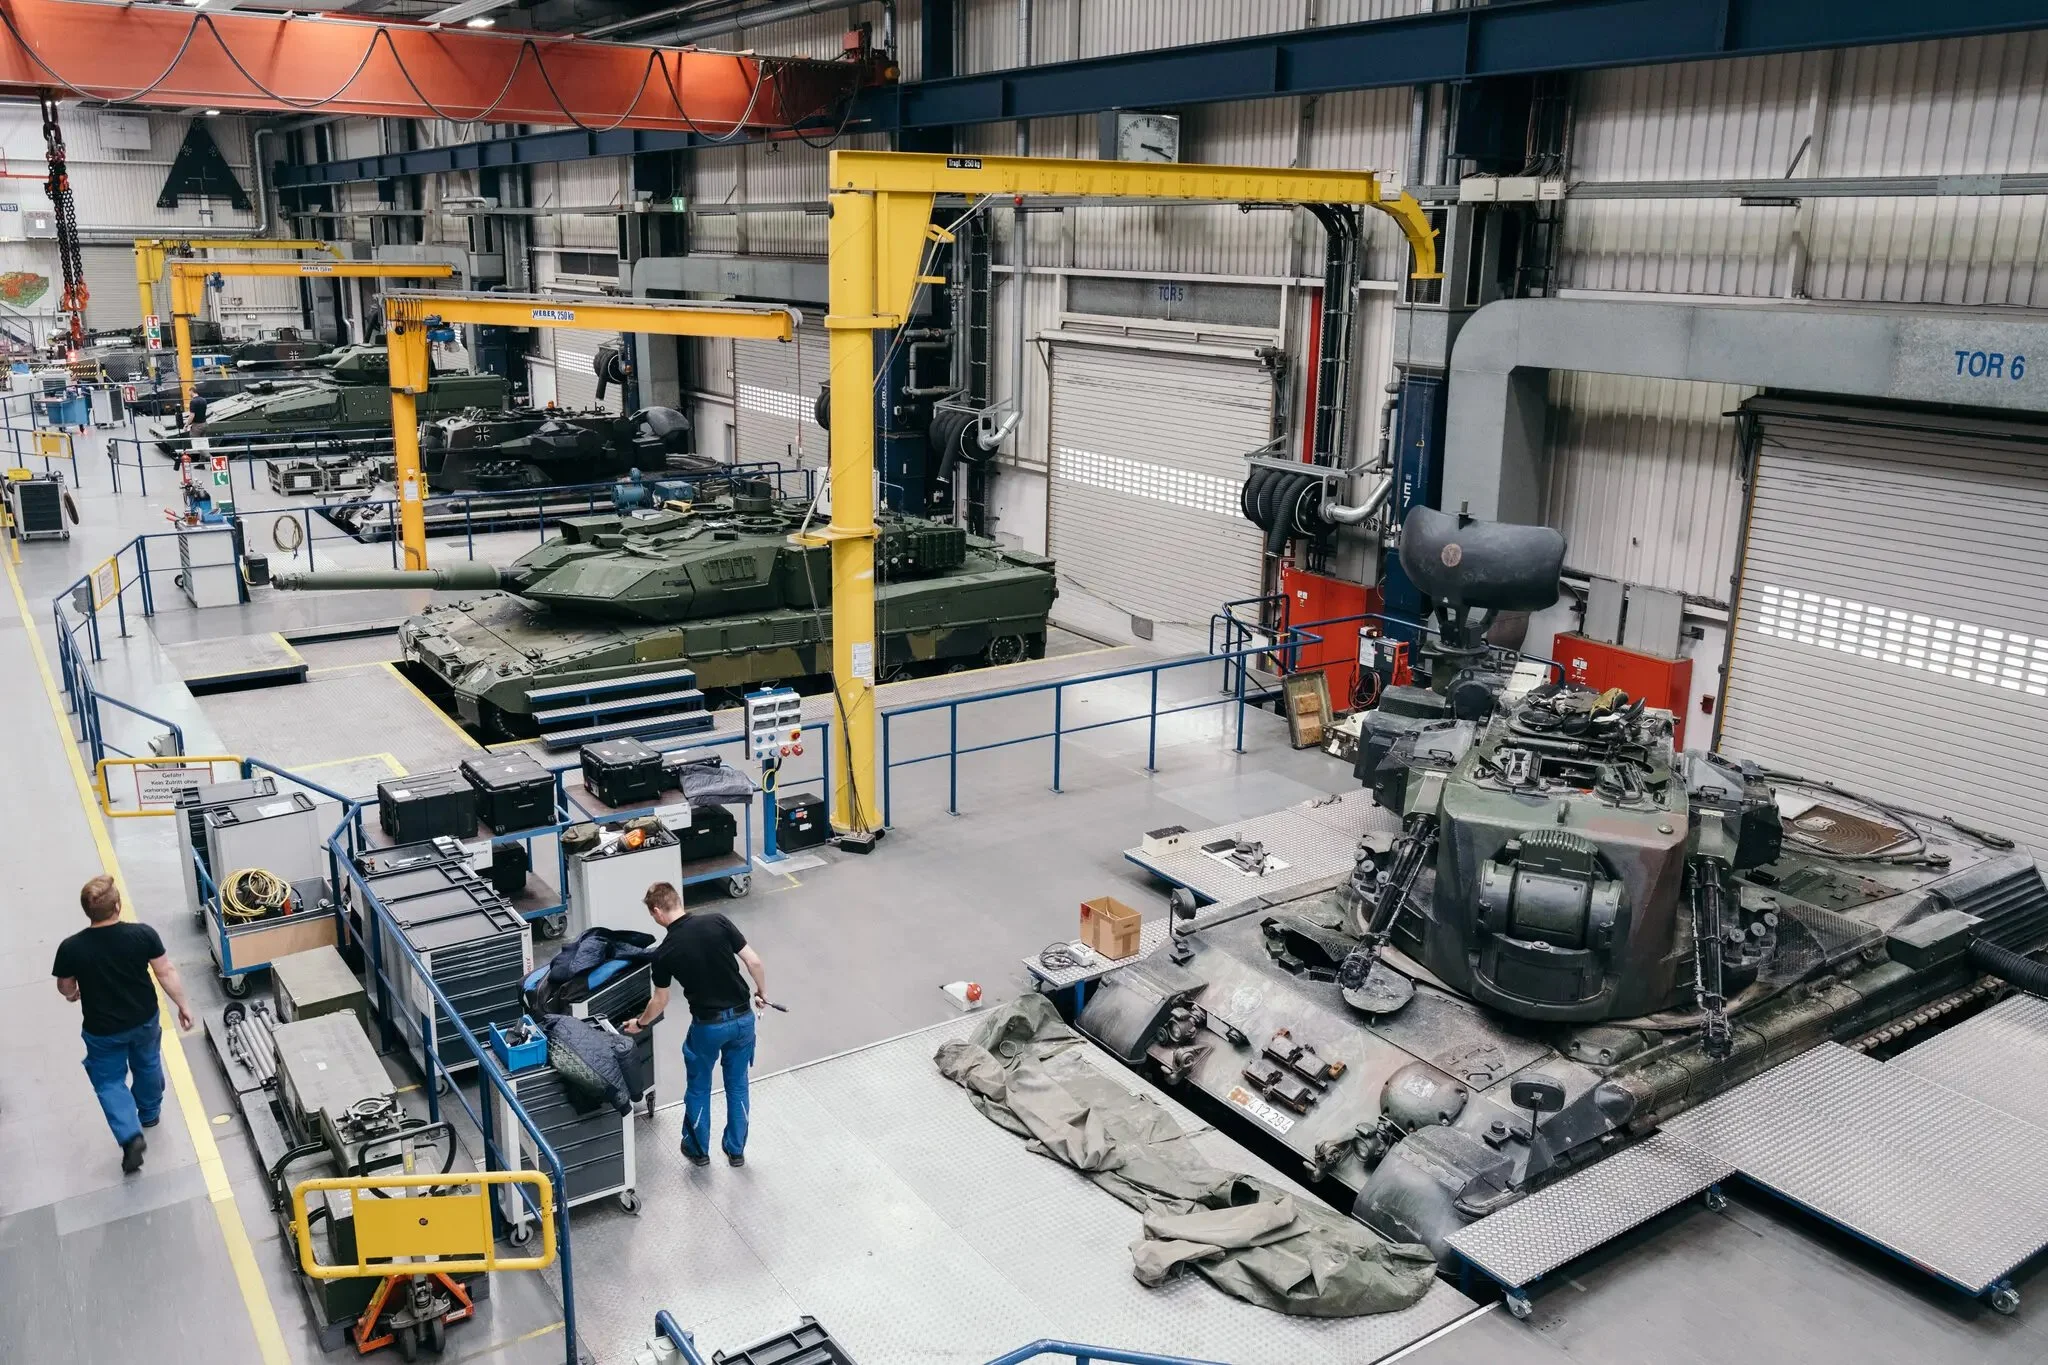 Leopard tanksduring the maintenance at the Krauss-Maffei Wegmann